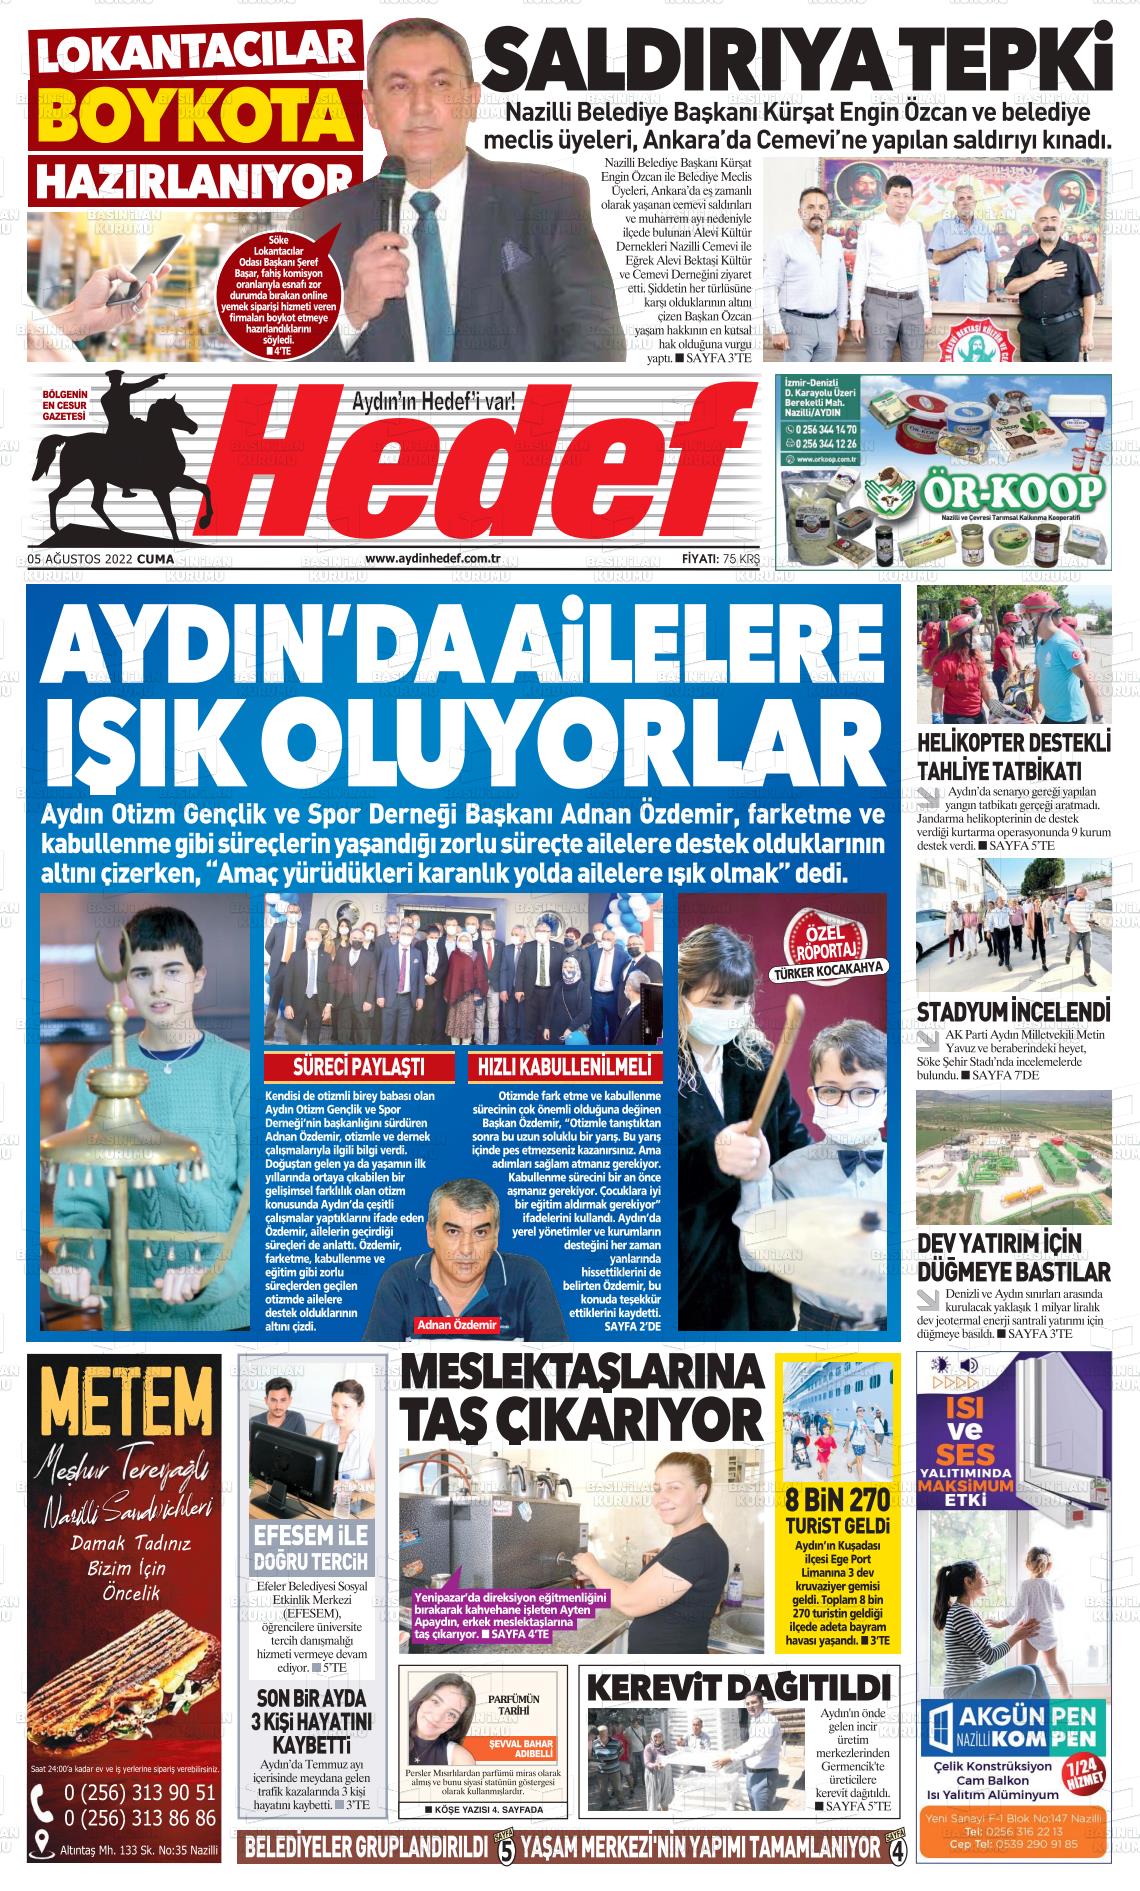 05 Ağustos 2022 Aydın Hedef Gazete Manşeti